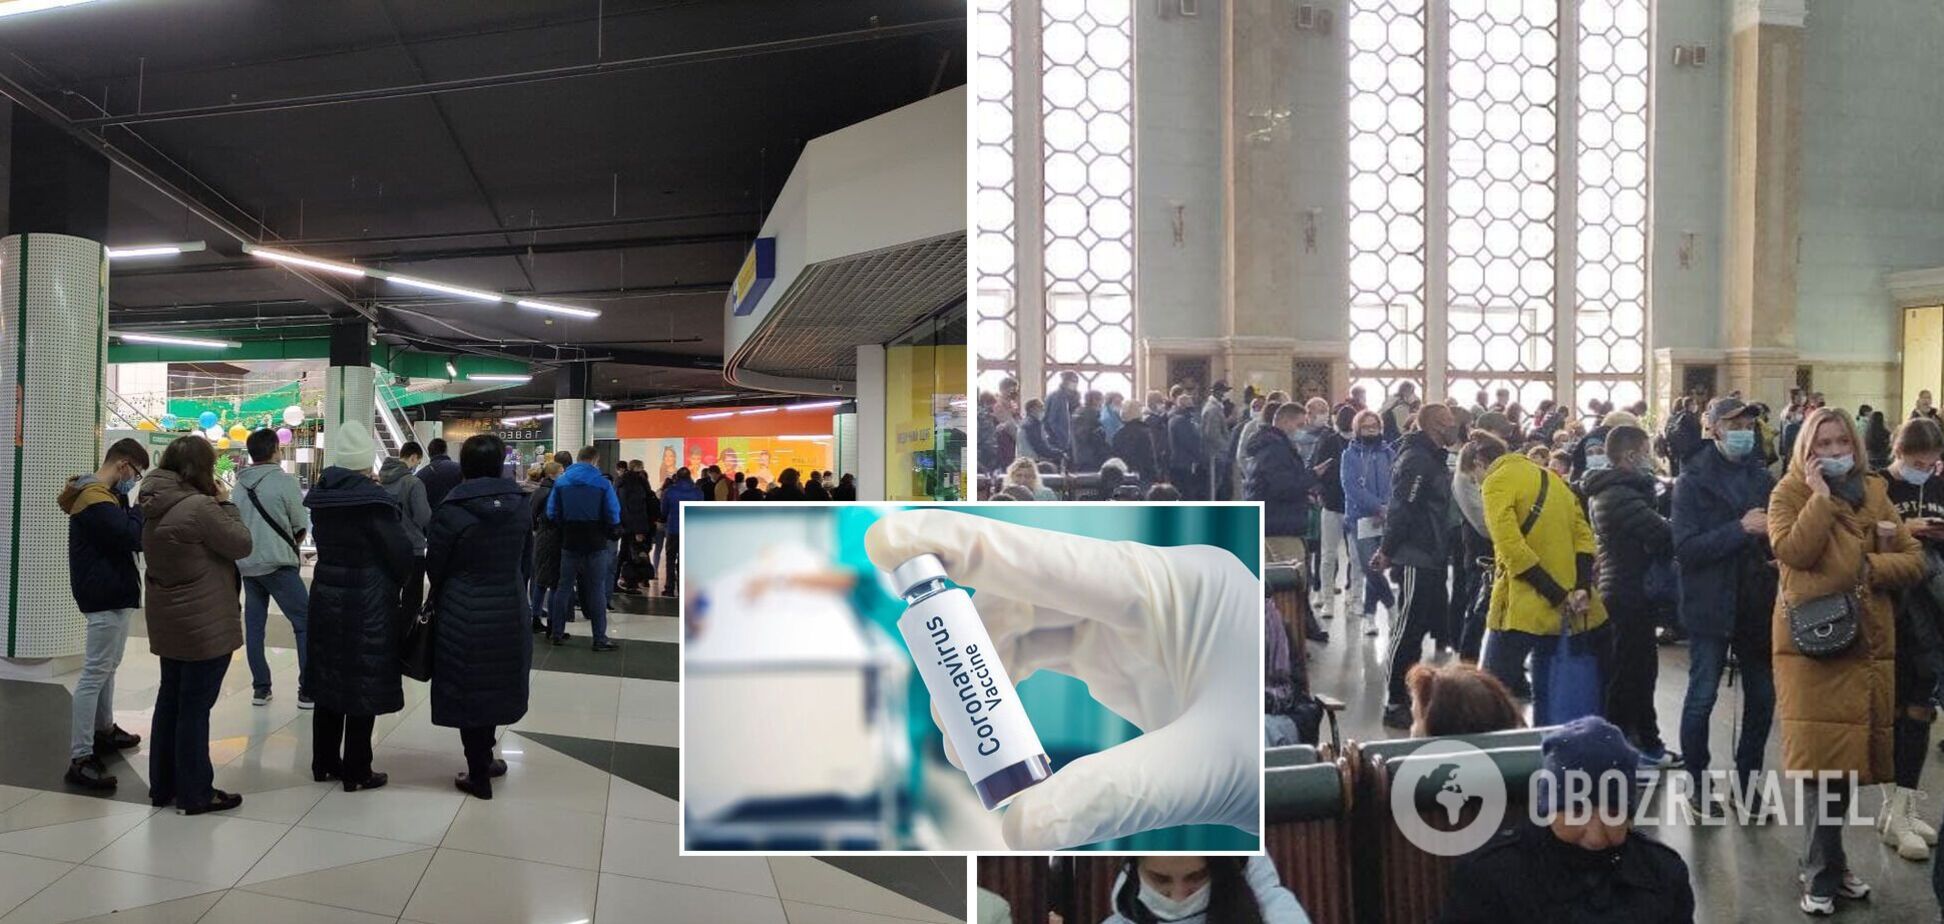 Українці застрягли в чергах на вакцинацію від COVID-19 напередодні локдауну. Фото та відео